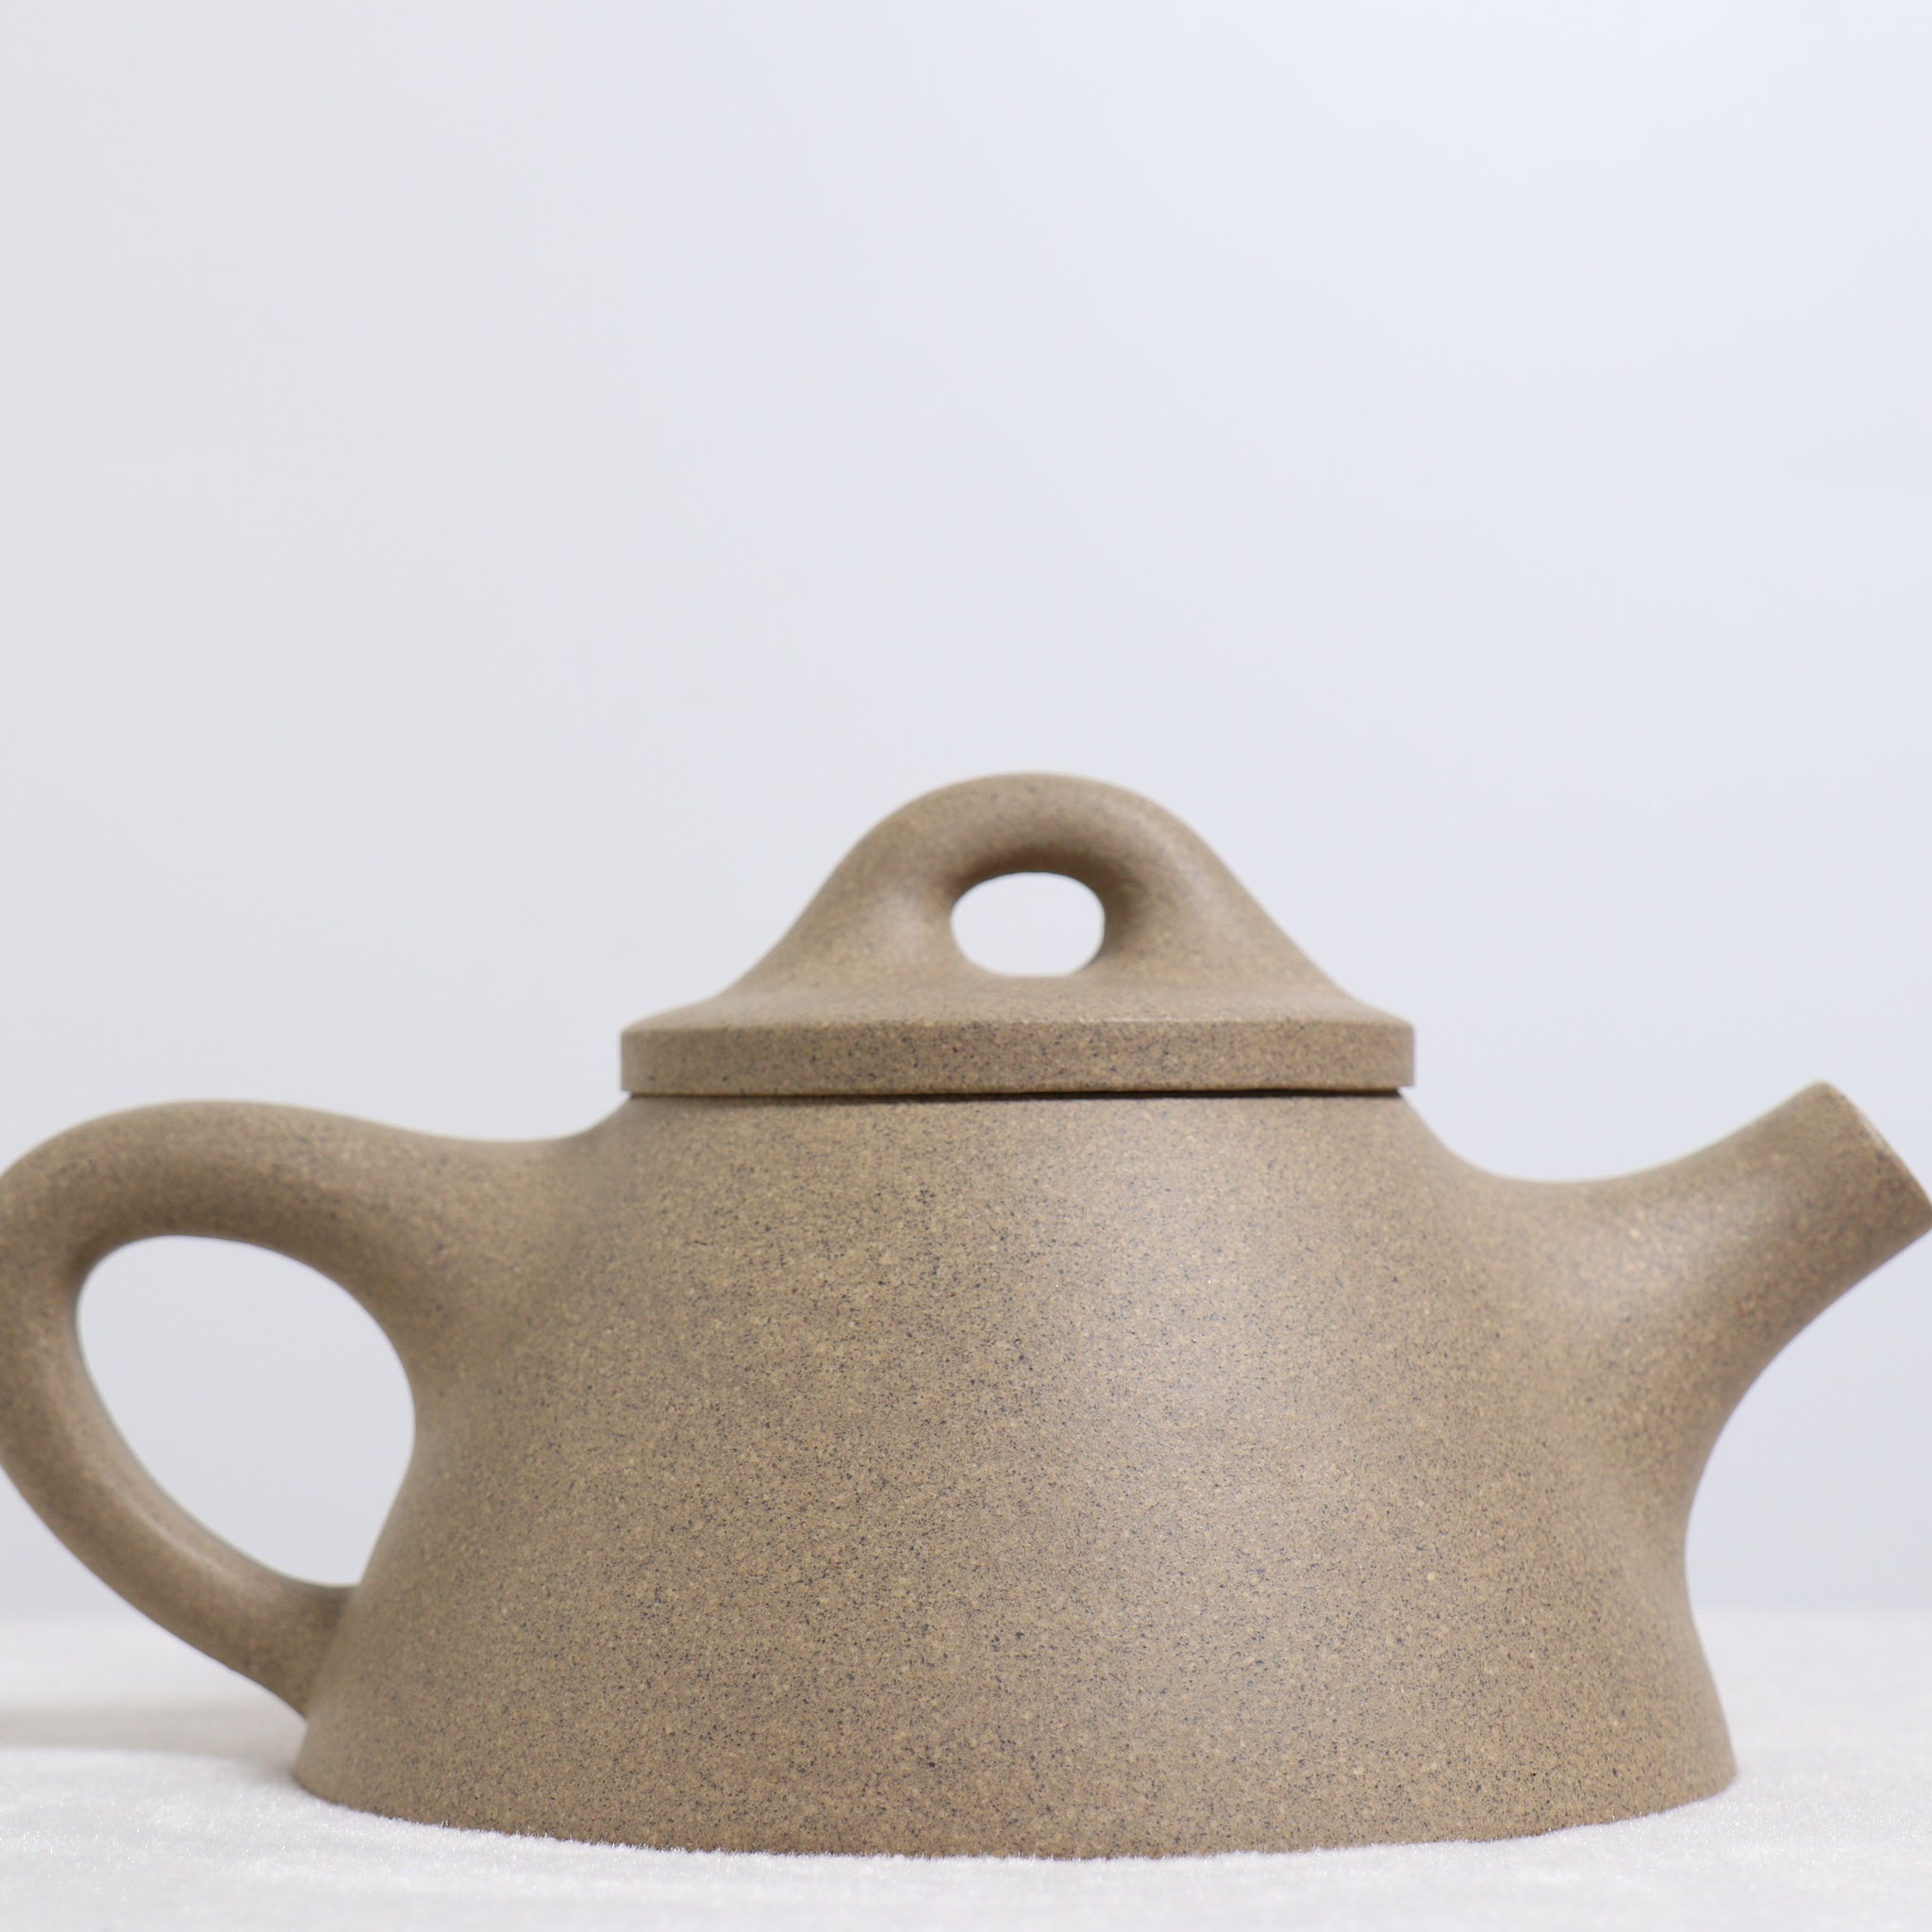 【和為貴】青灰段泥書法紫砂茶壺